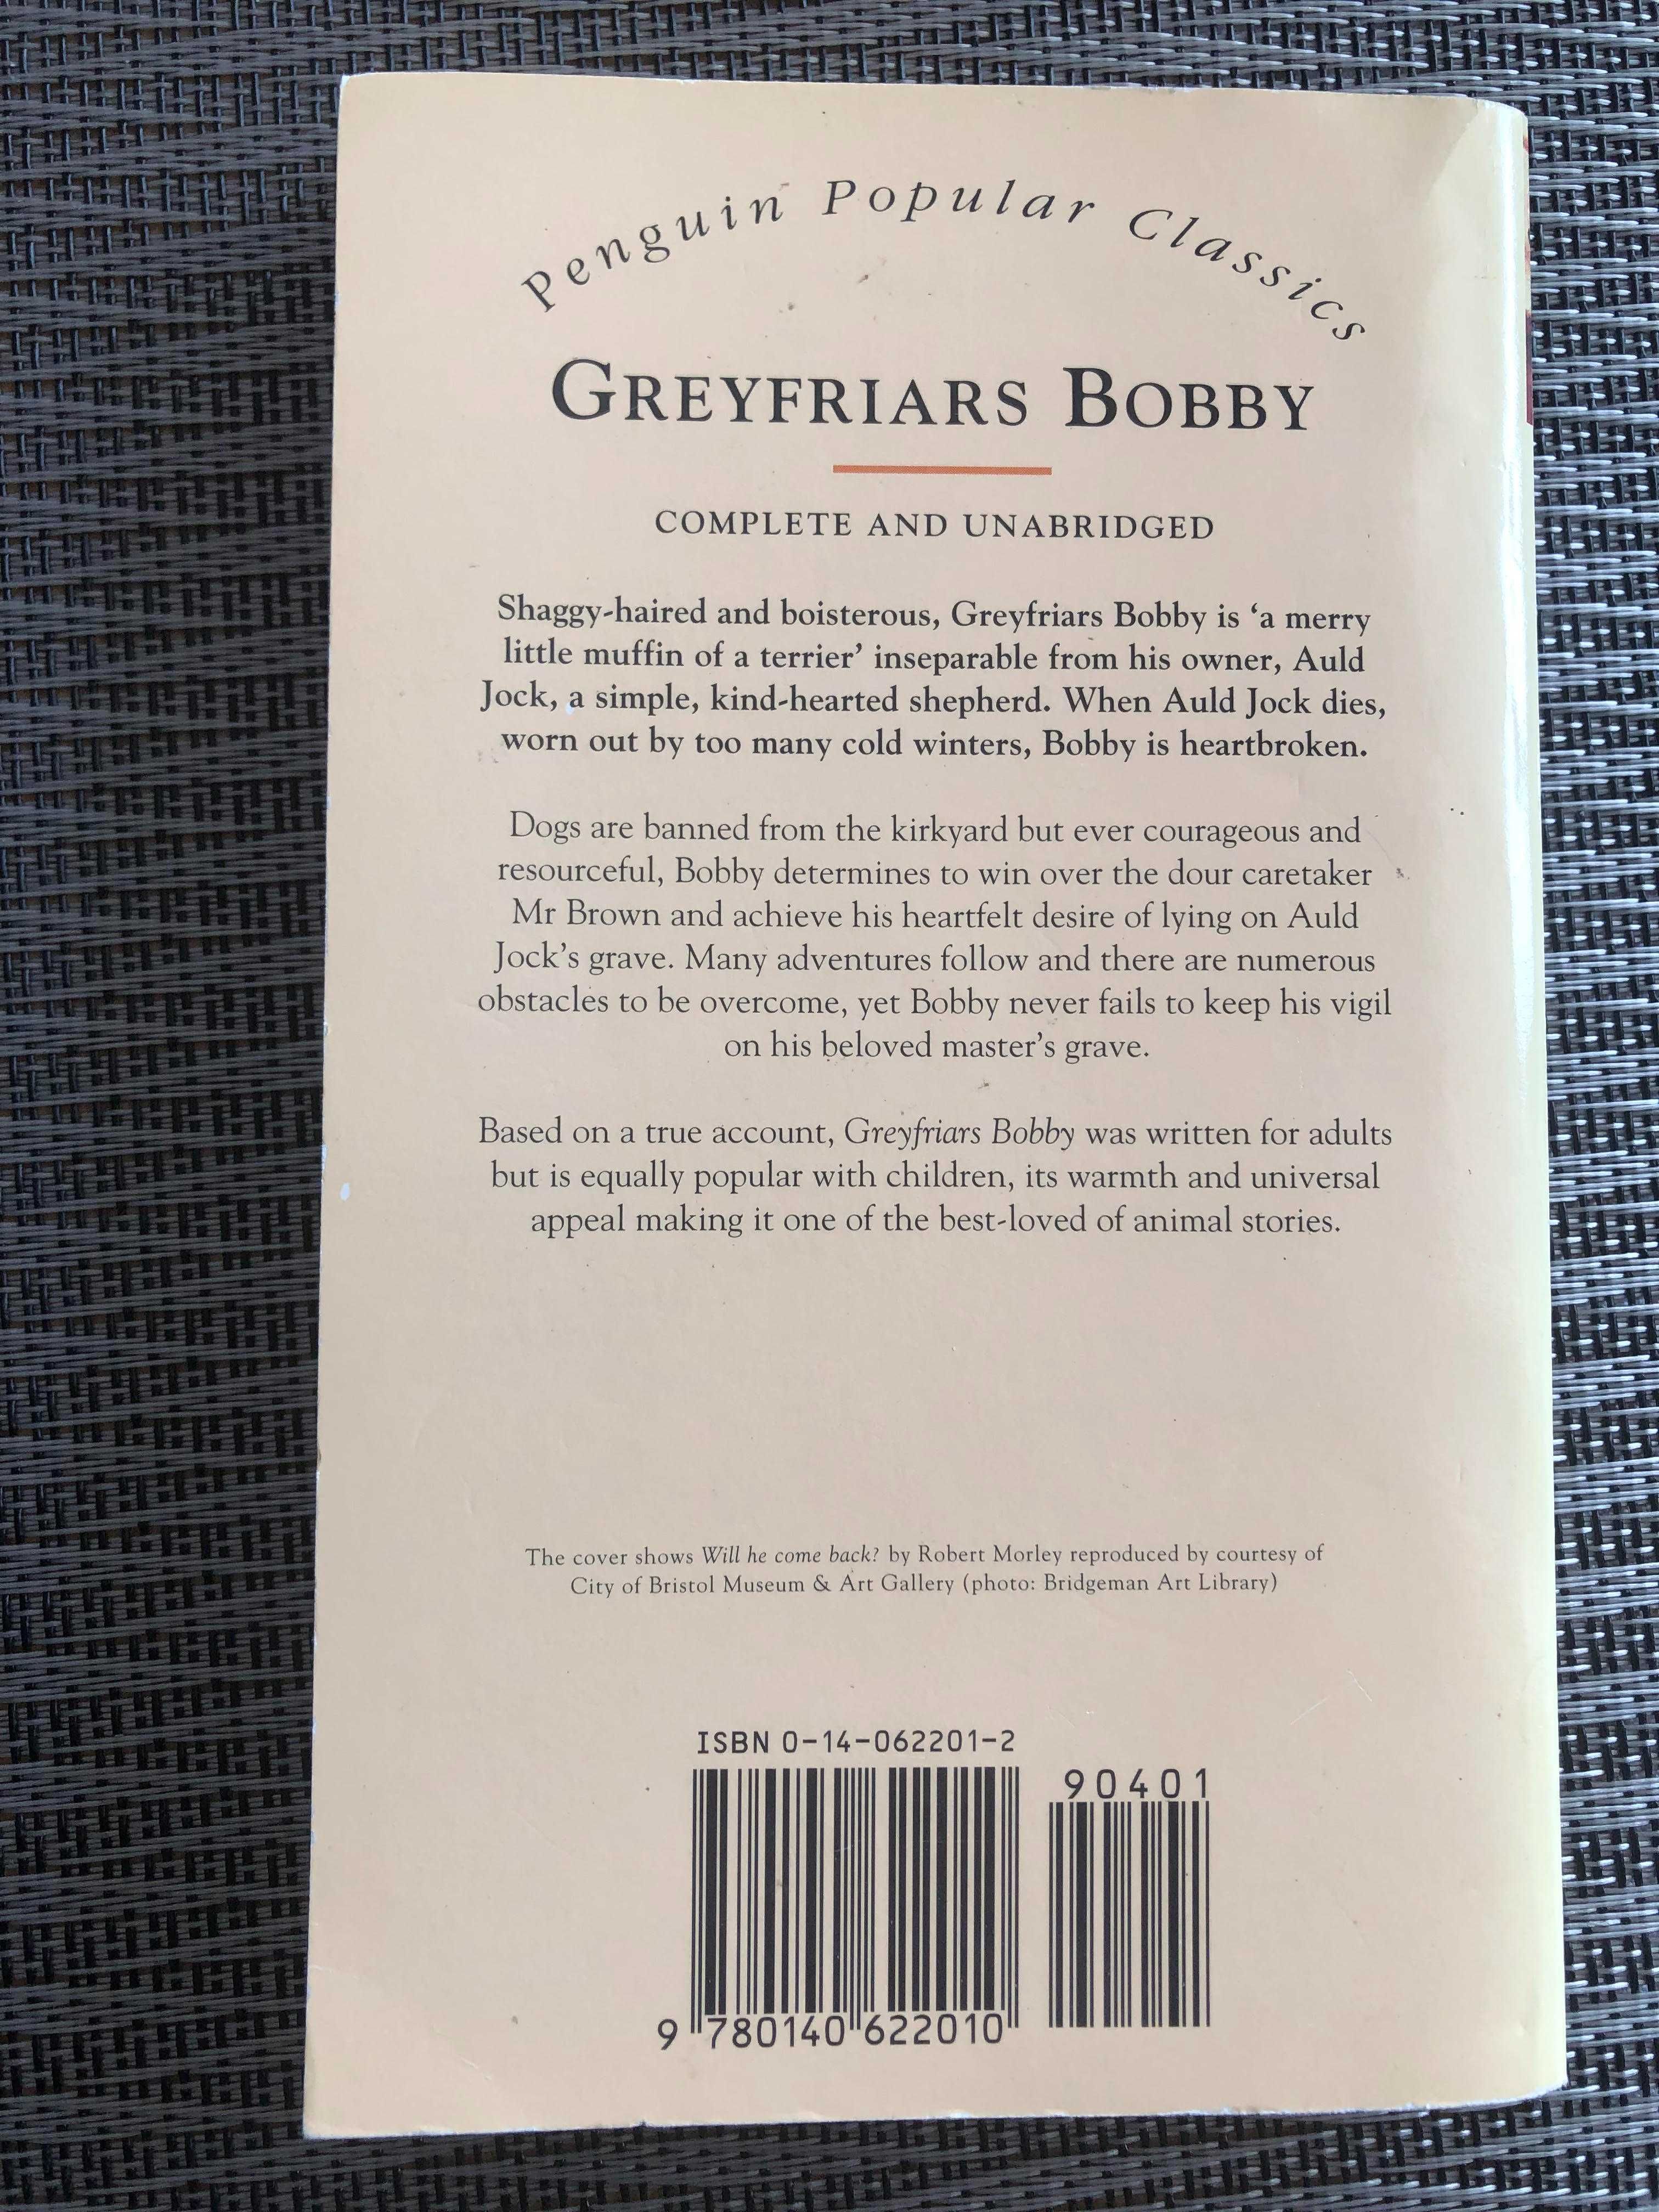 Eleanor Atkinson "Greyfriars Bobby" w języku angielskim